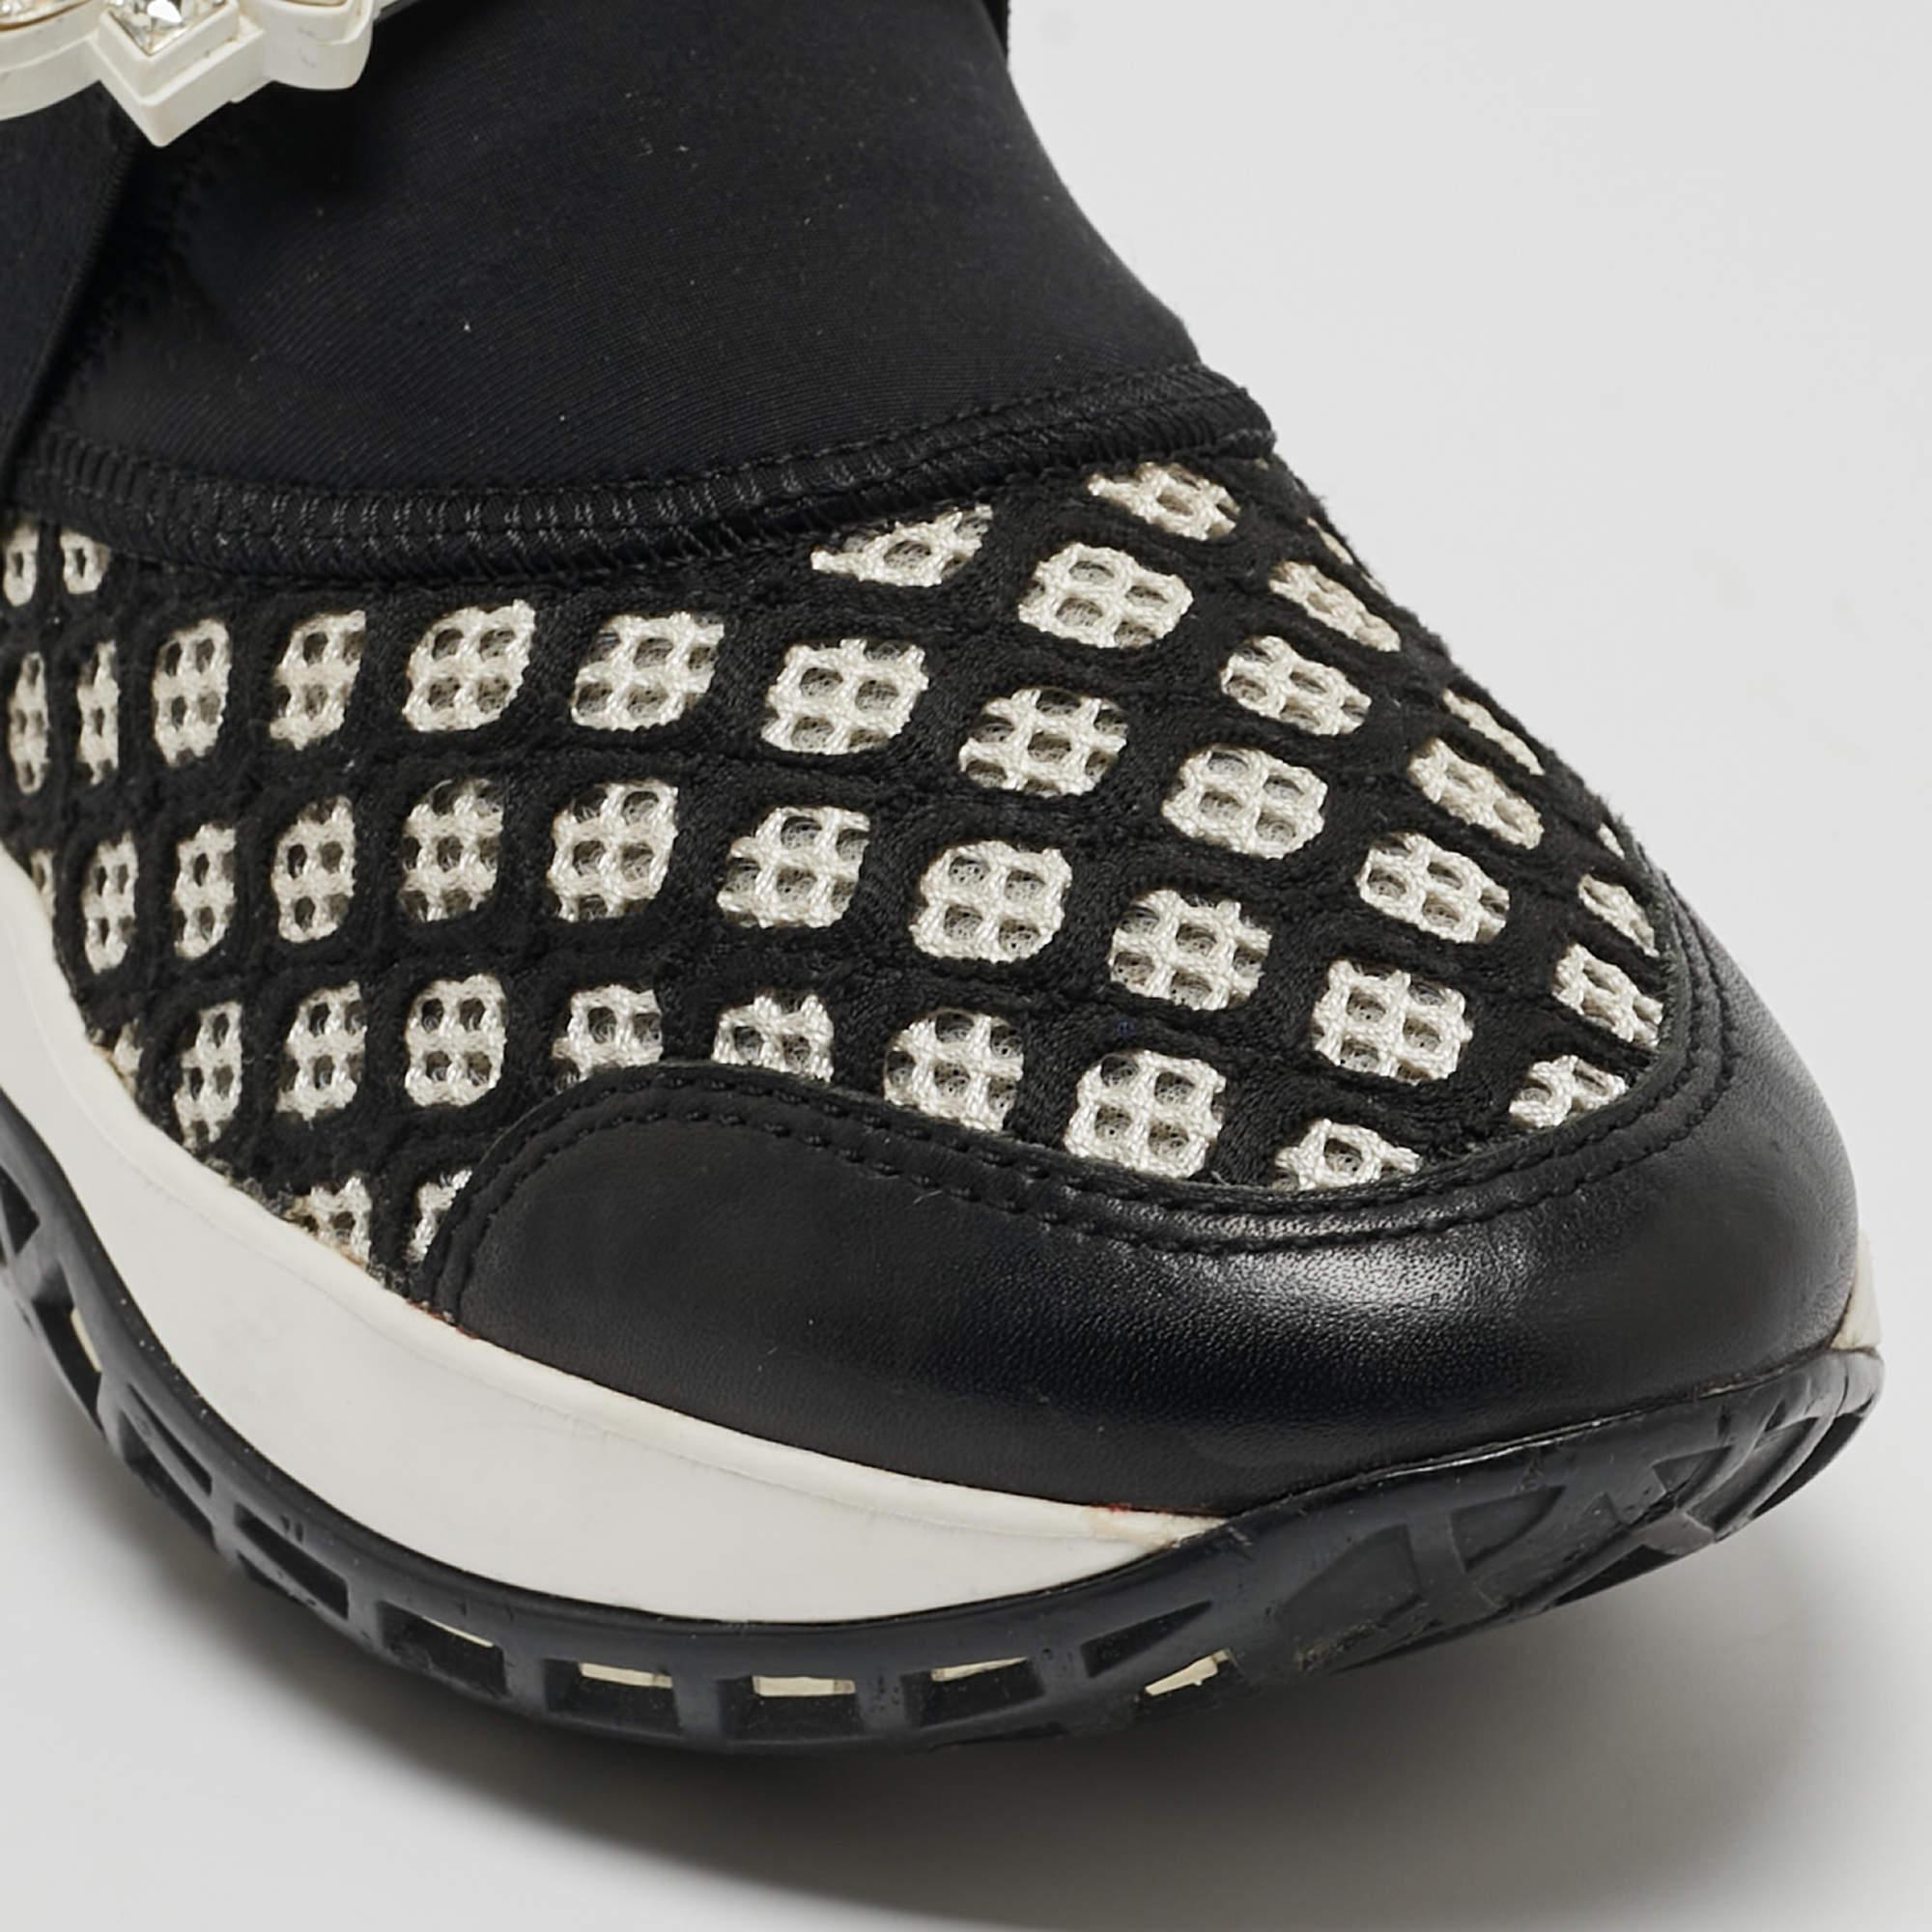 Roger Vivier Black/White Mesh and Neoprene Viv Run Strass Sneakers Size 35 For Sale 1